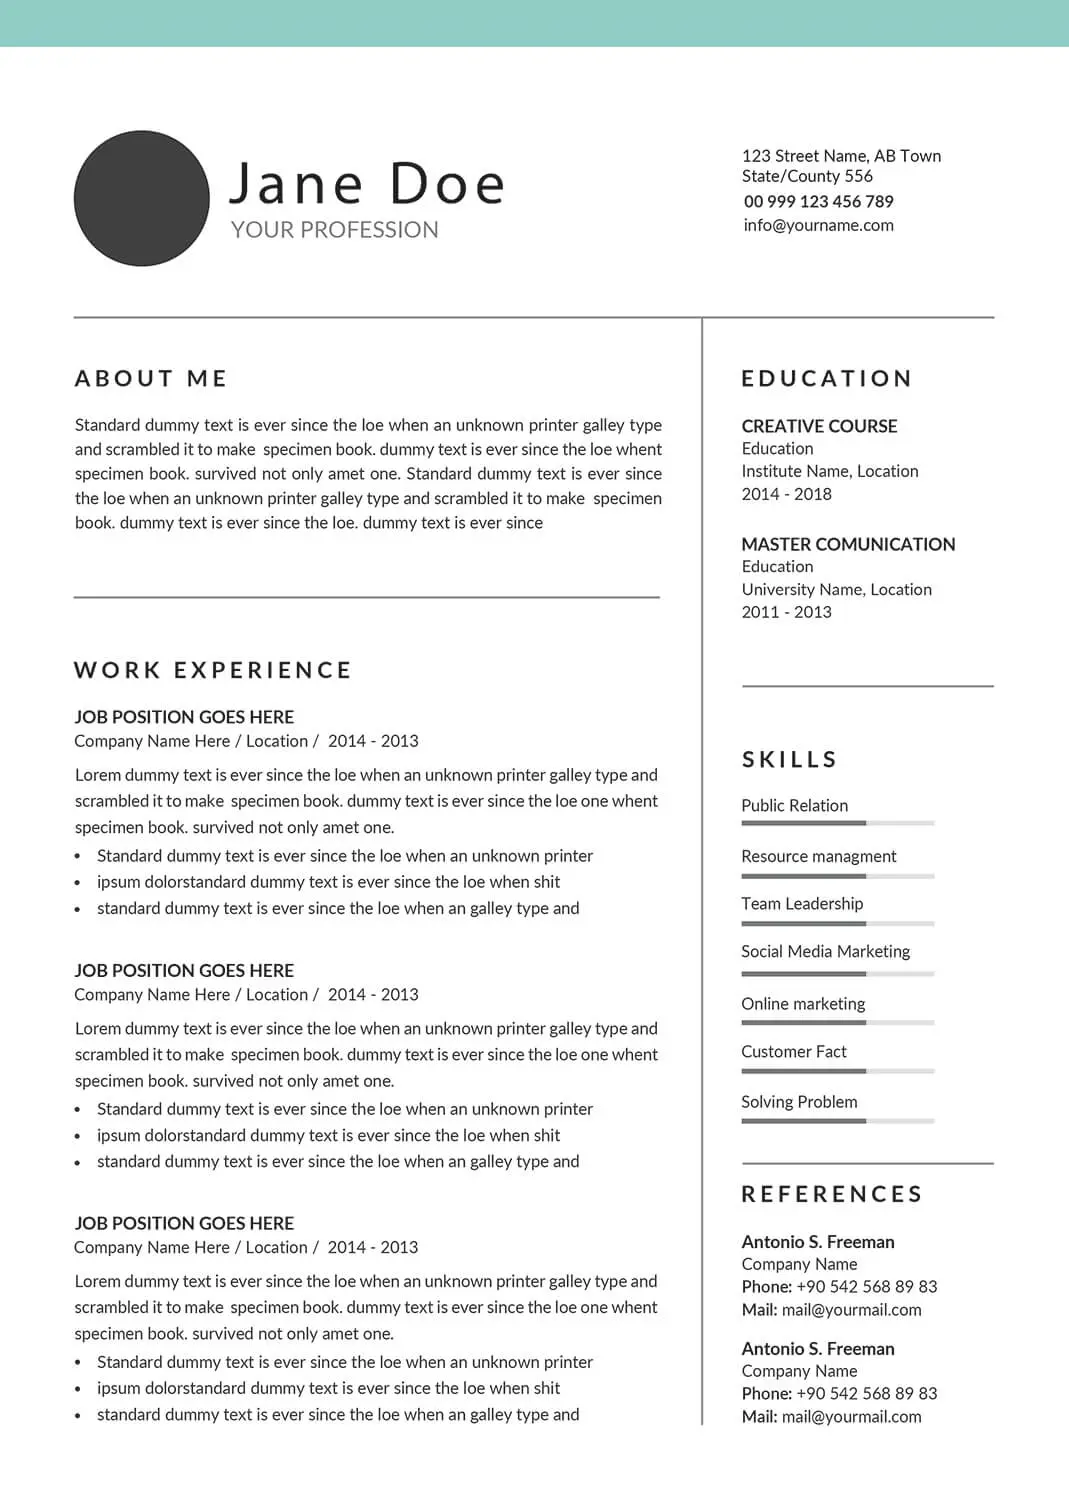 Mercadona-resume